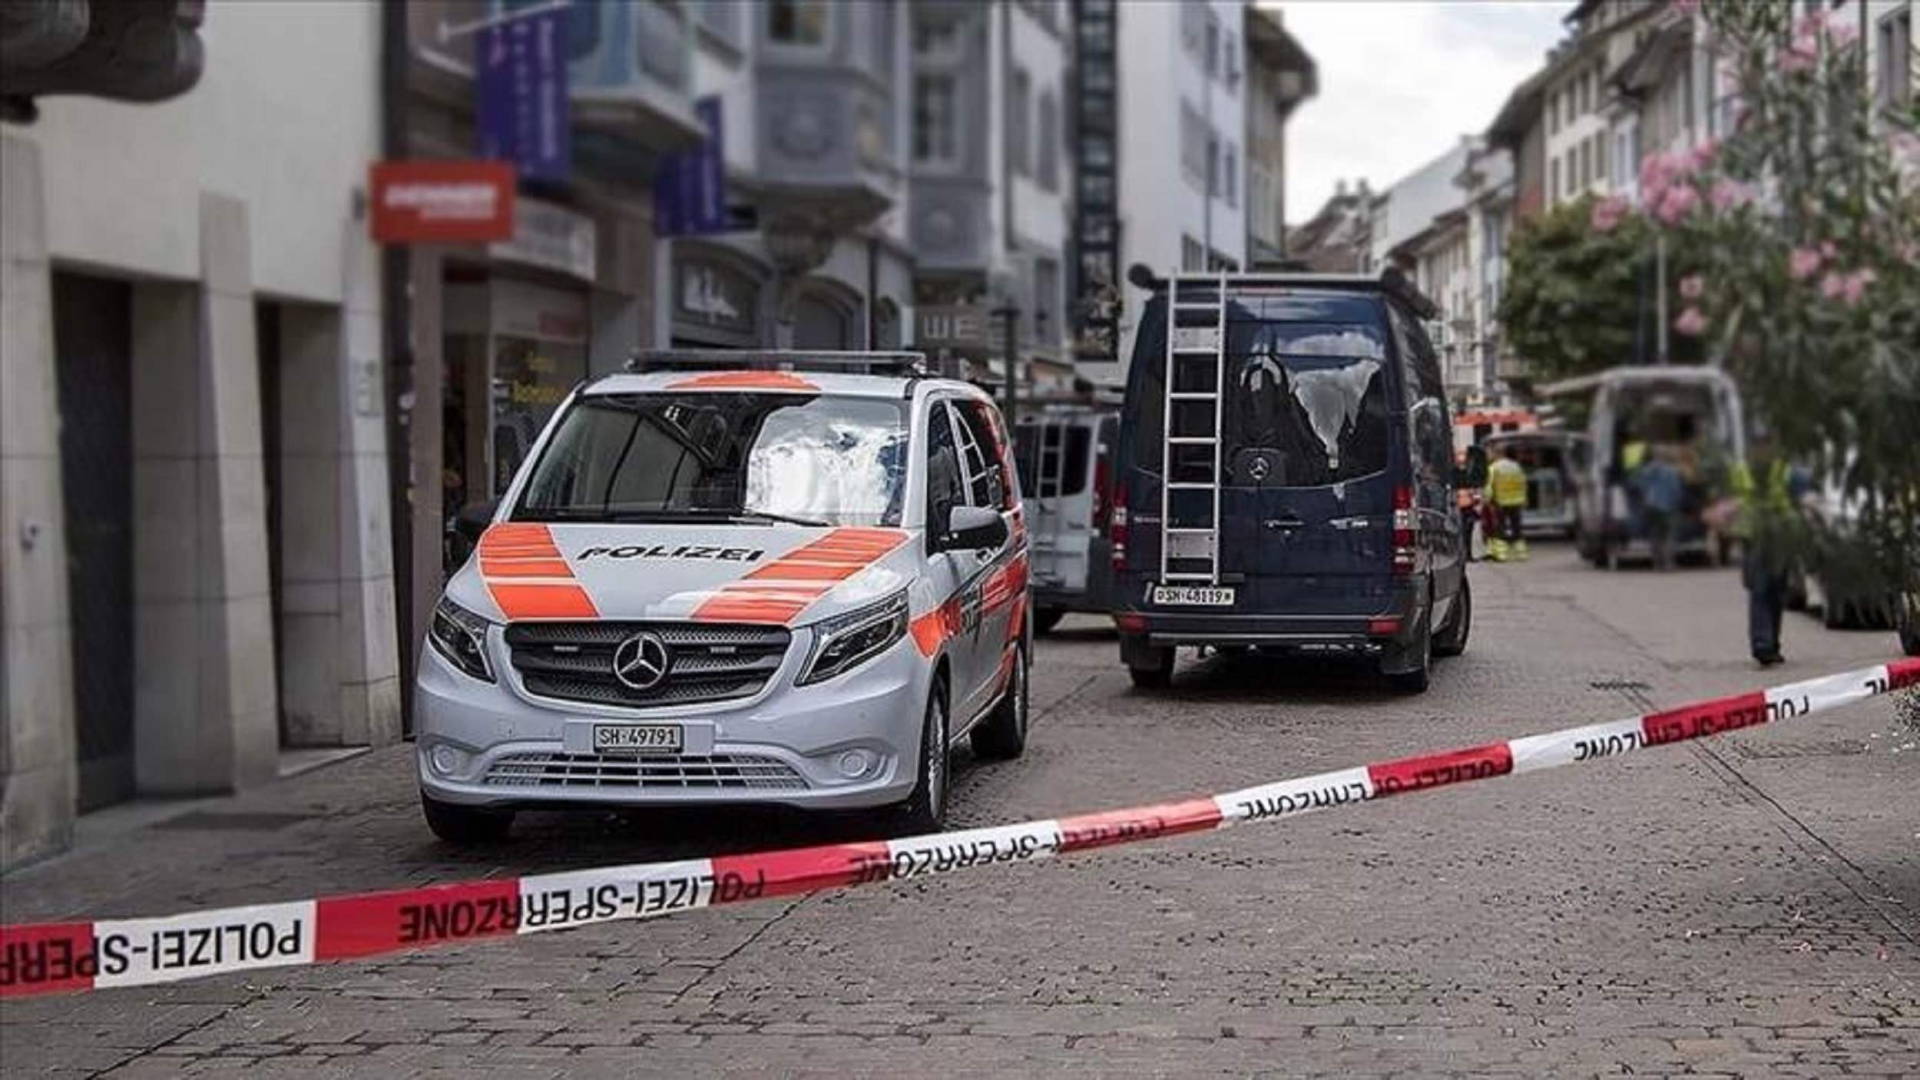 policija-svicarska-anadolija.jpg